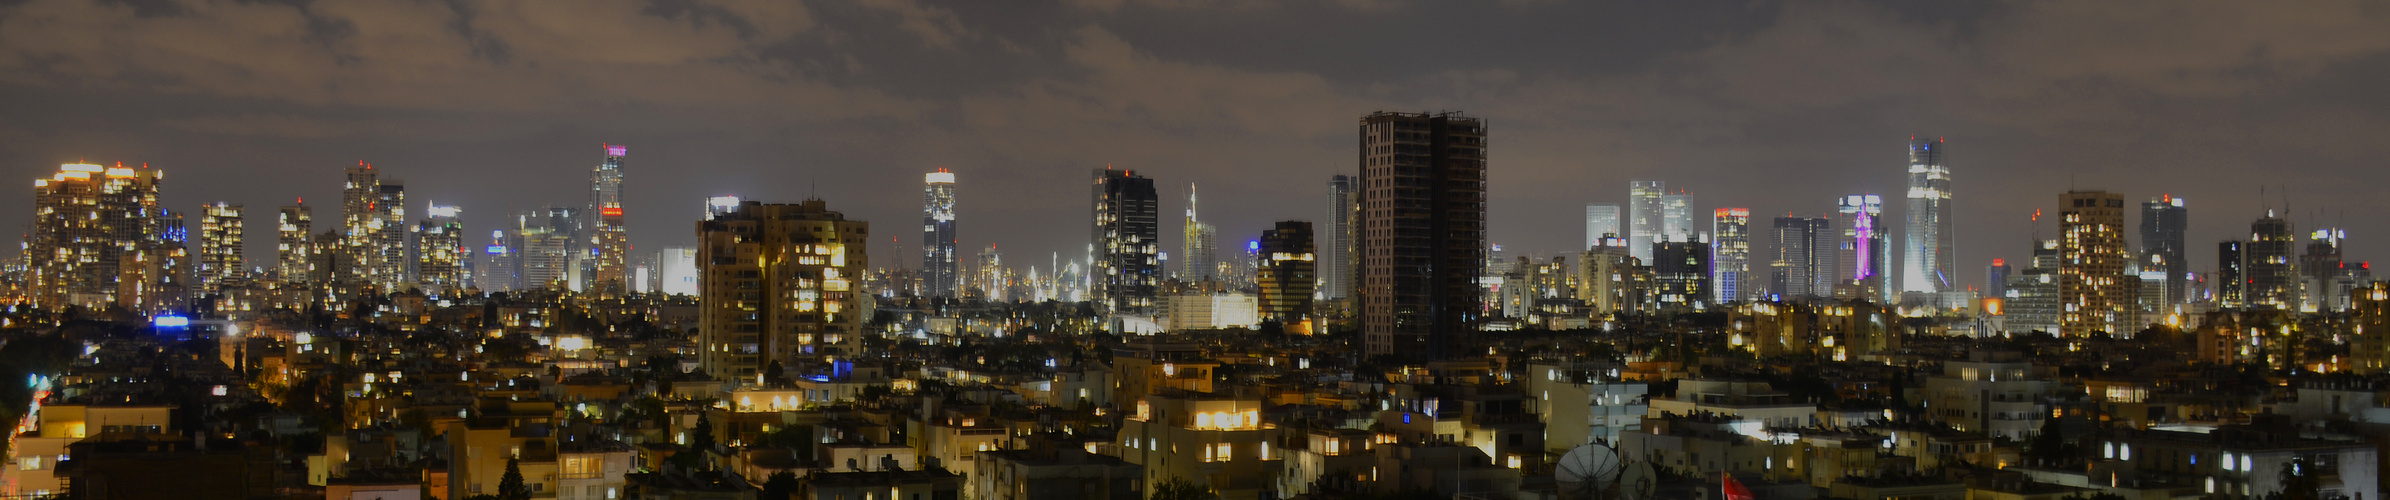 Skyline Tel Avivs bei Abenddämmerung